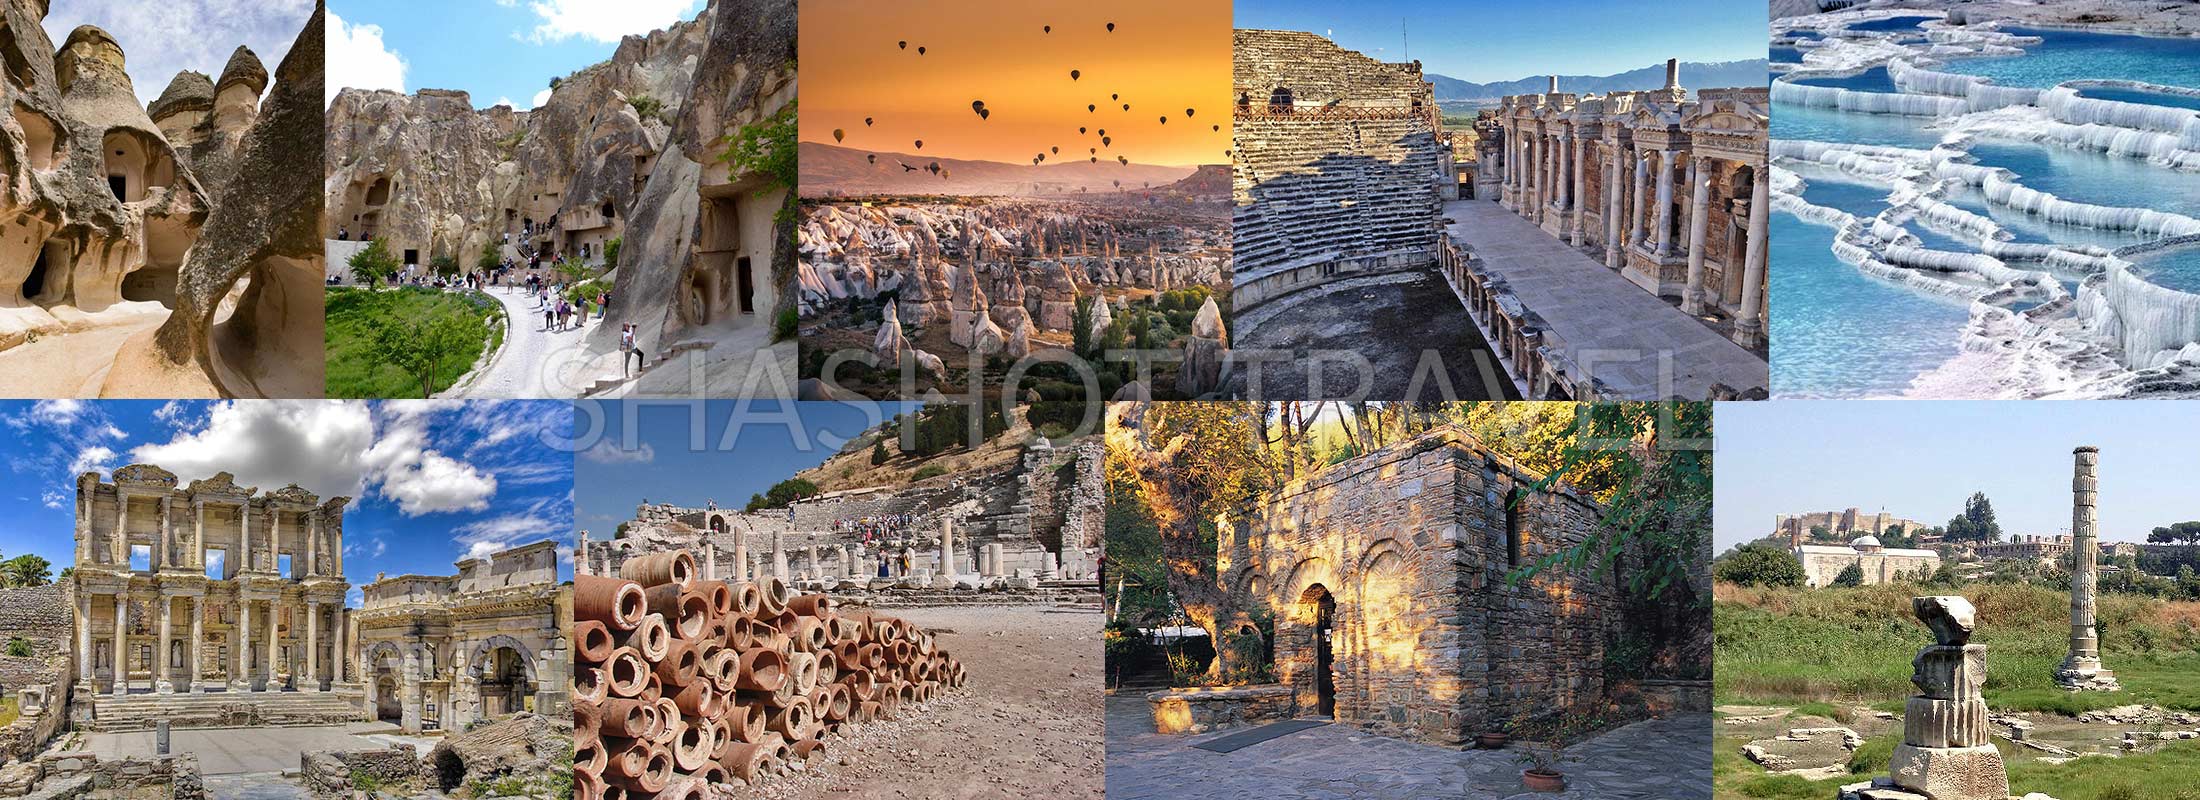 turkey-package-tours-4-days-cappadocia-pamukkale-hierapolis-ephesus-virgin-mary-house